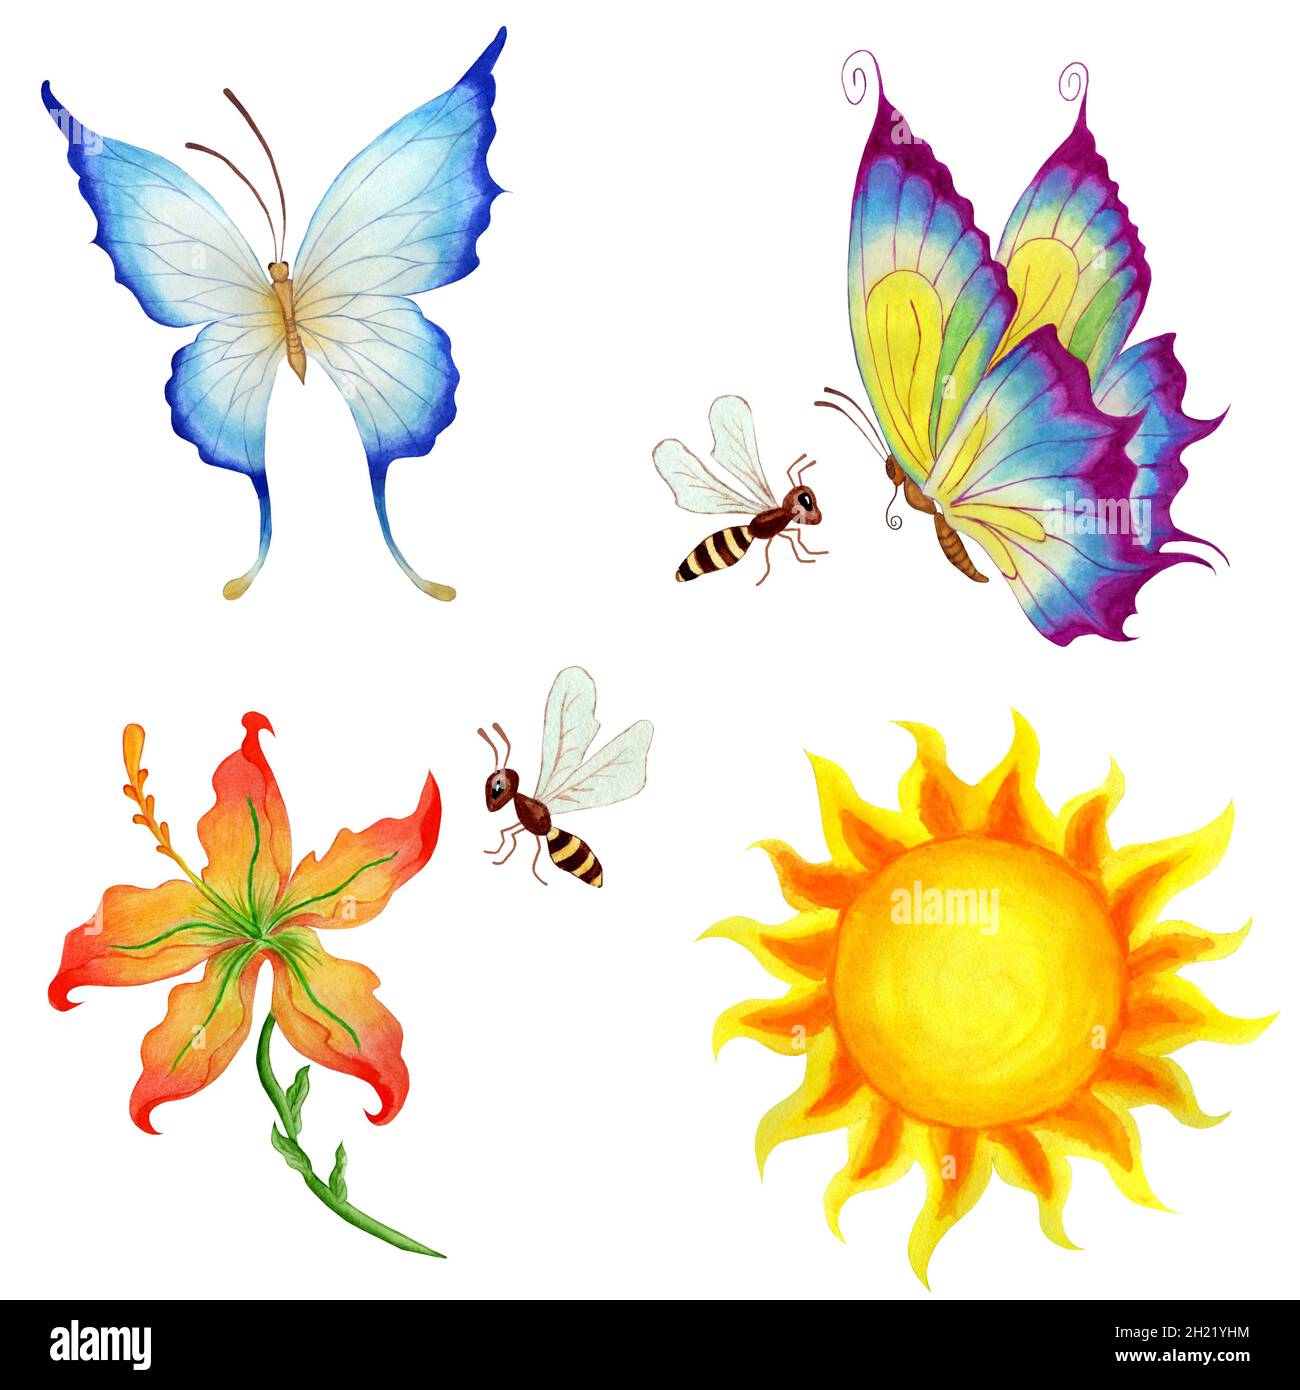 Conjunto de hermosas mariposas voladoras aisladas sobre un fondo blanco.  Foto de alta calidad Fotografía de stock - Alamy